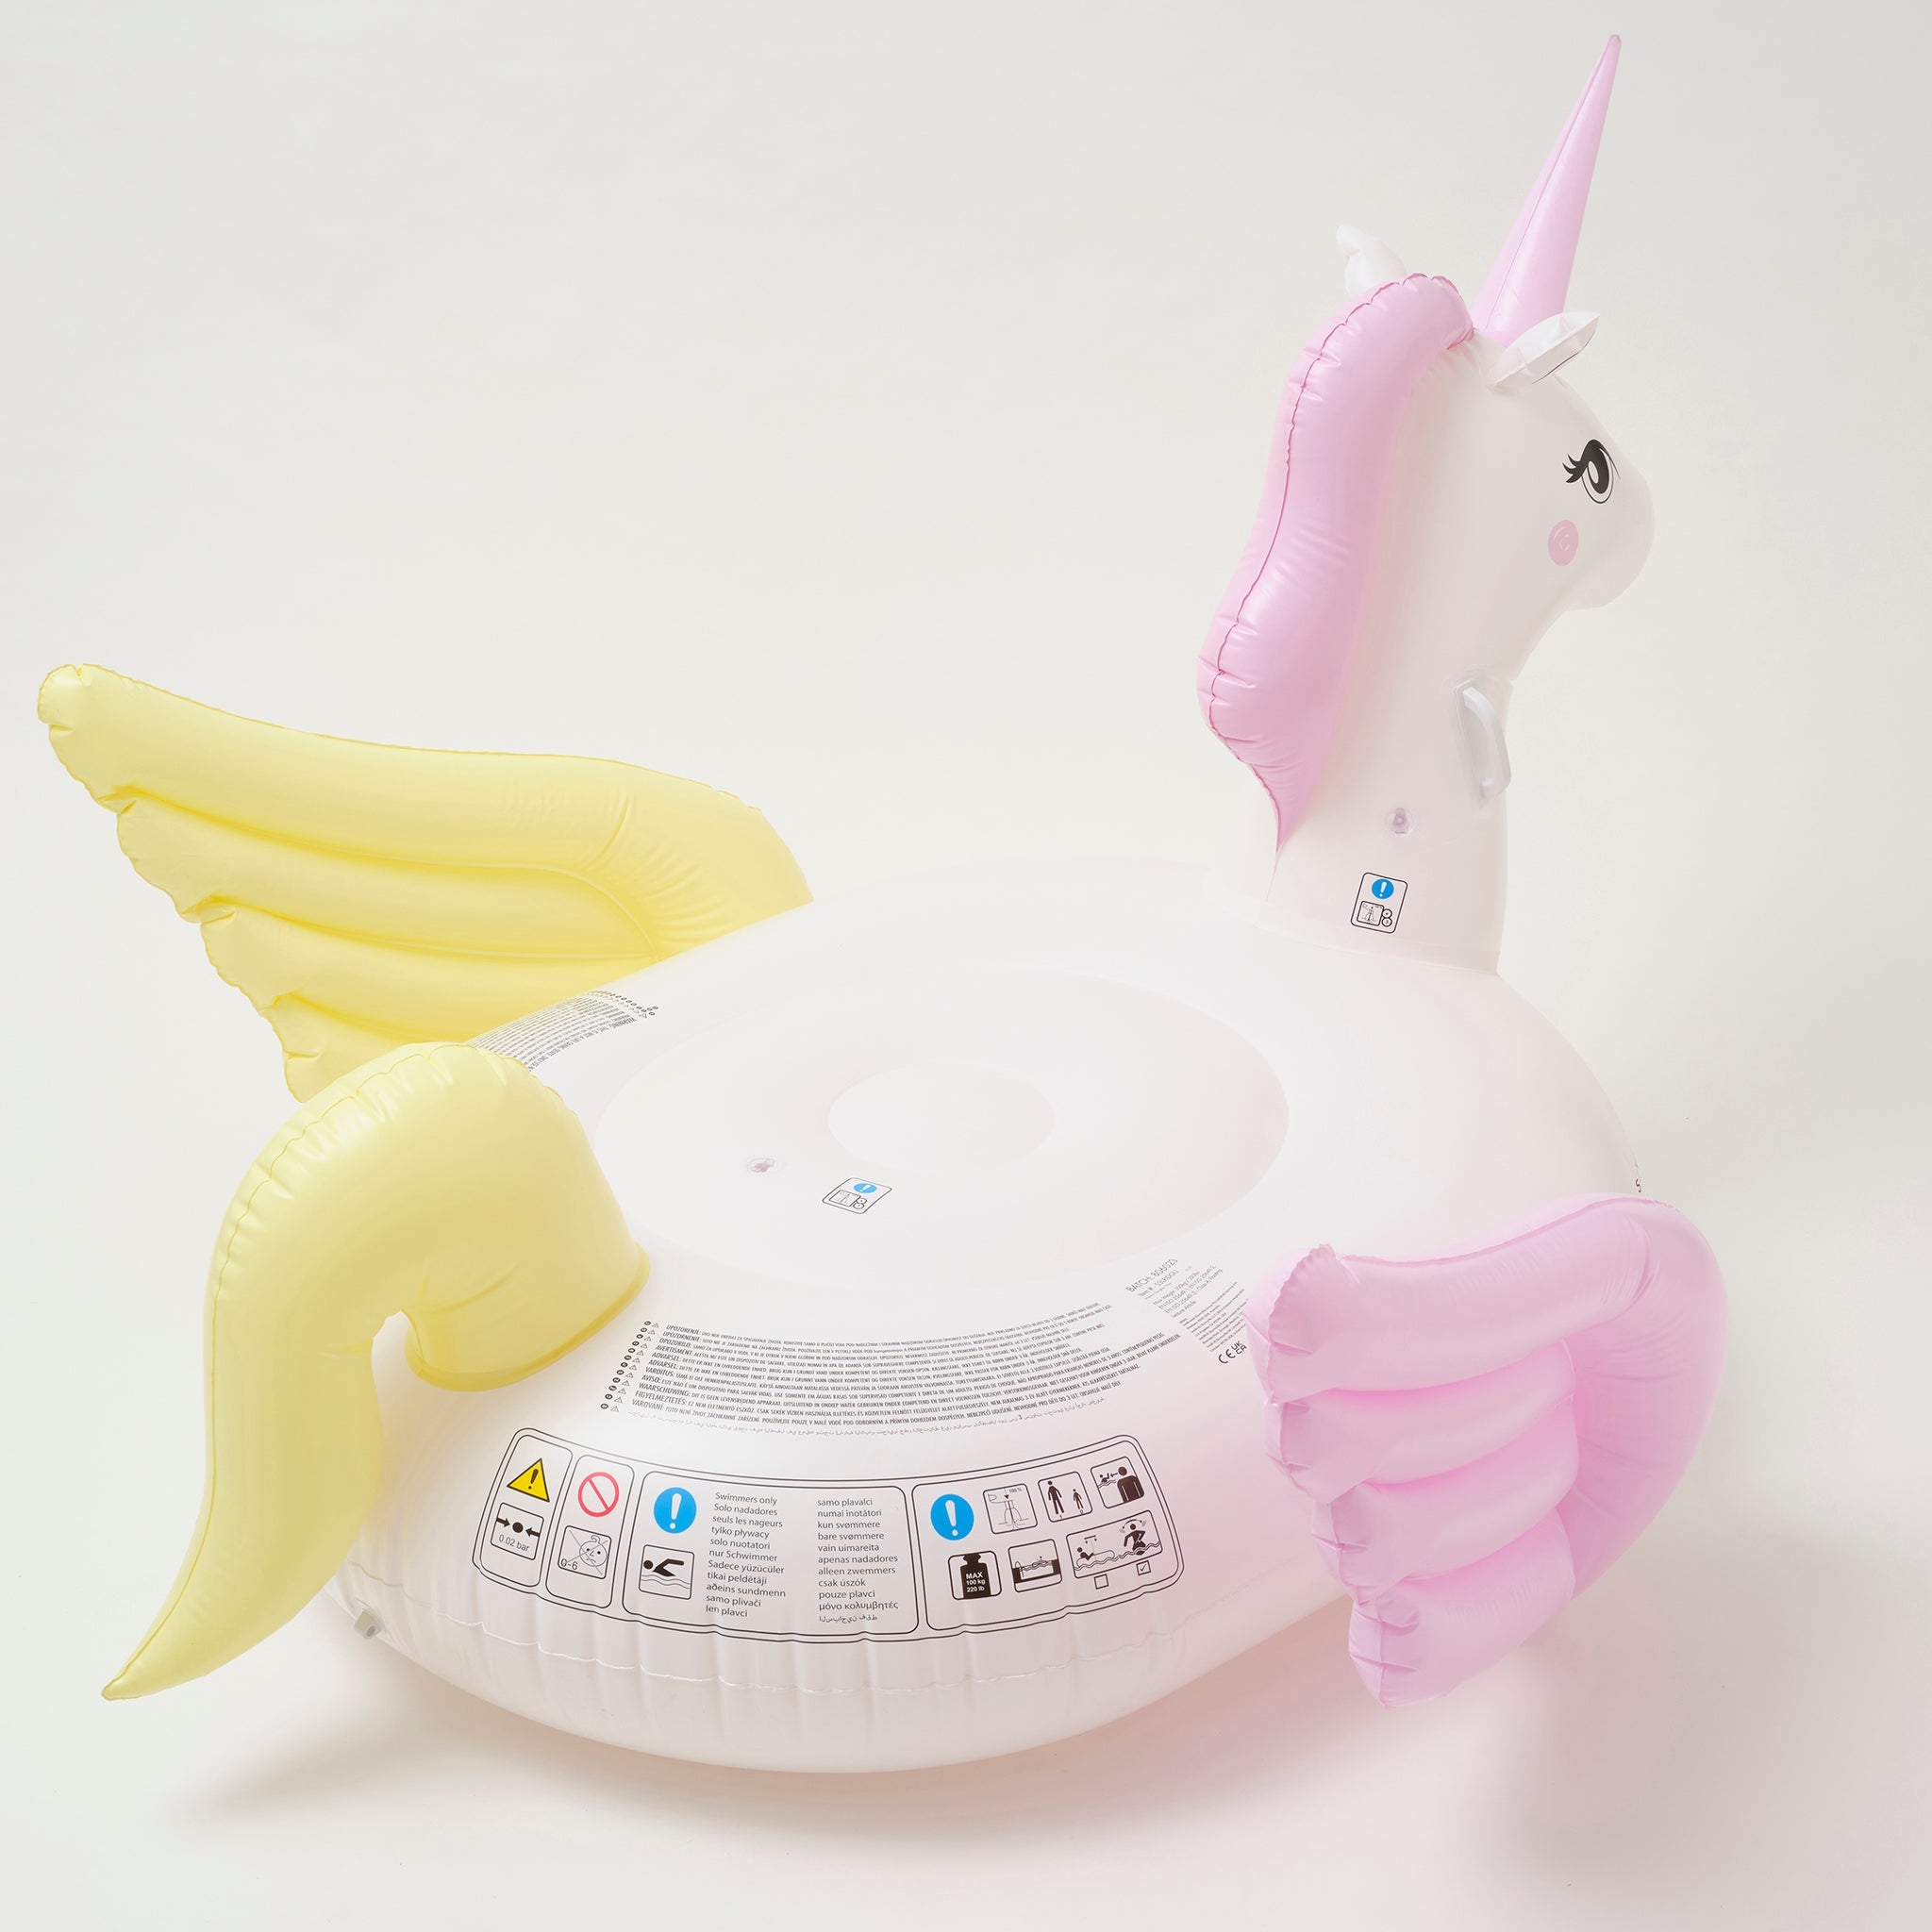 Luxe Ride-On Float | Unicorn Pastel